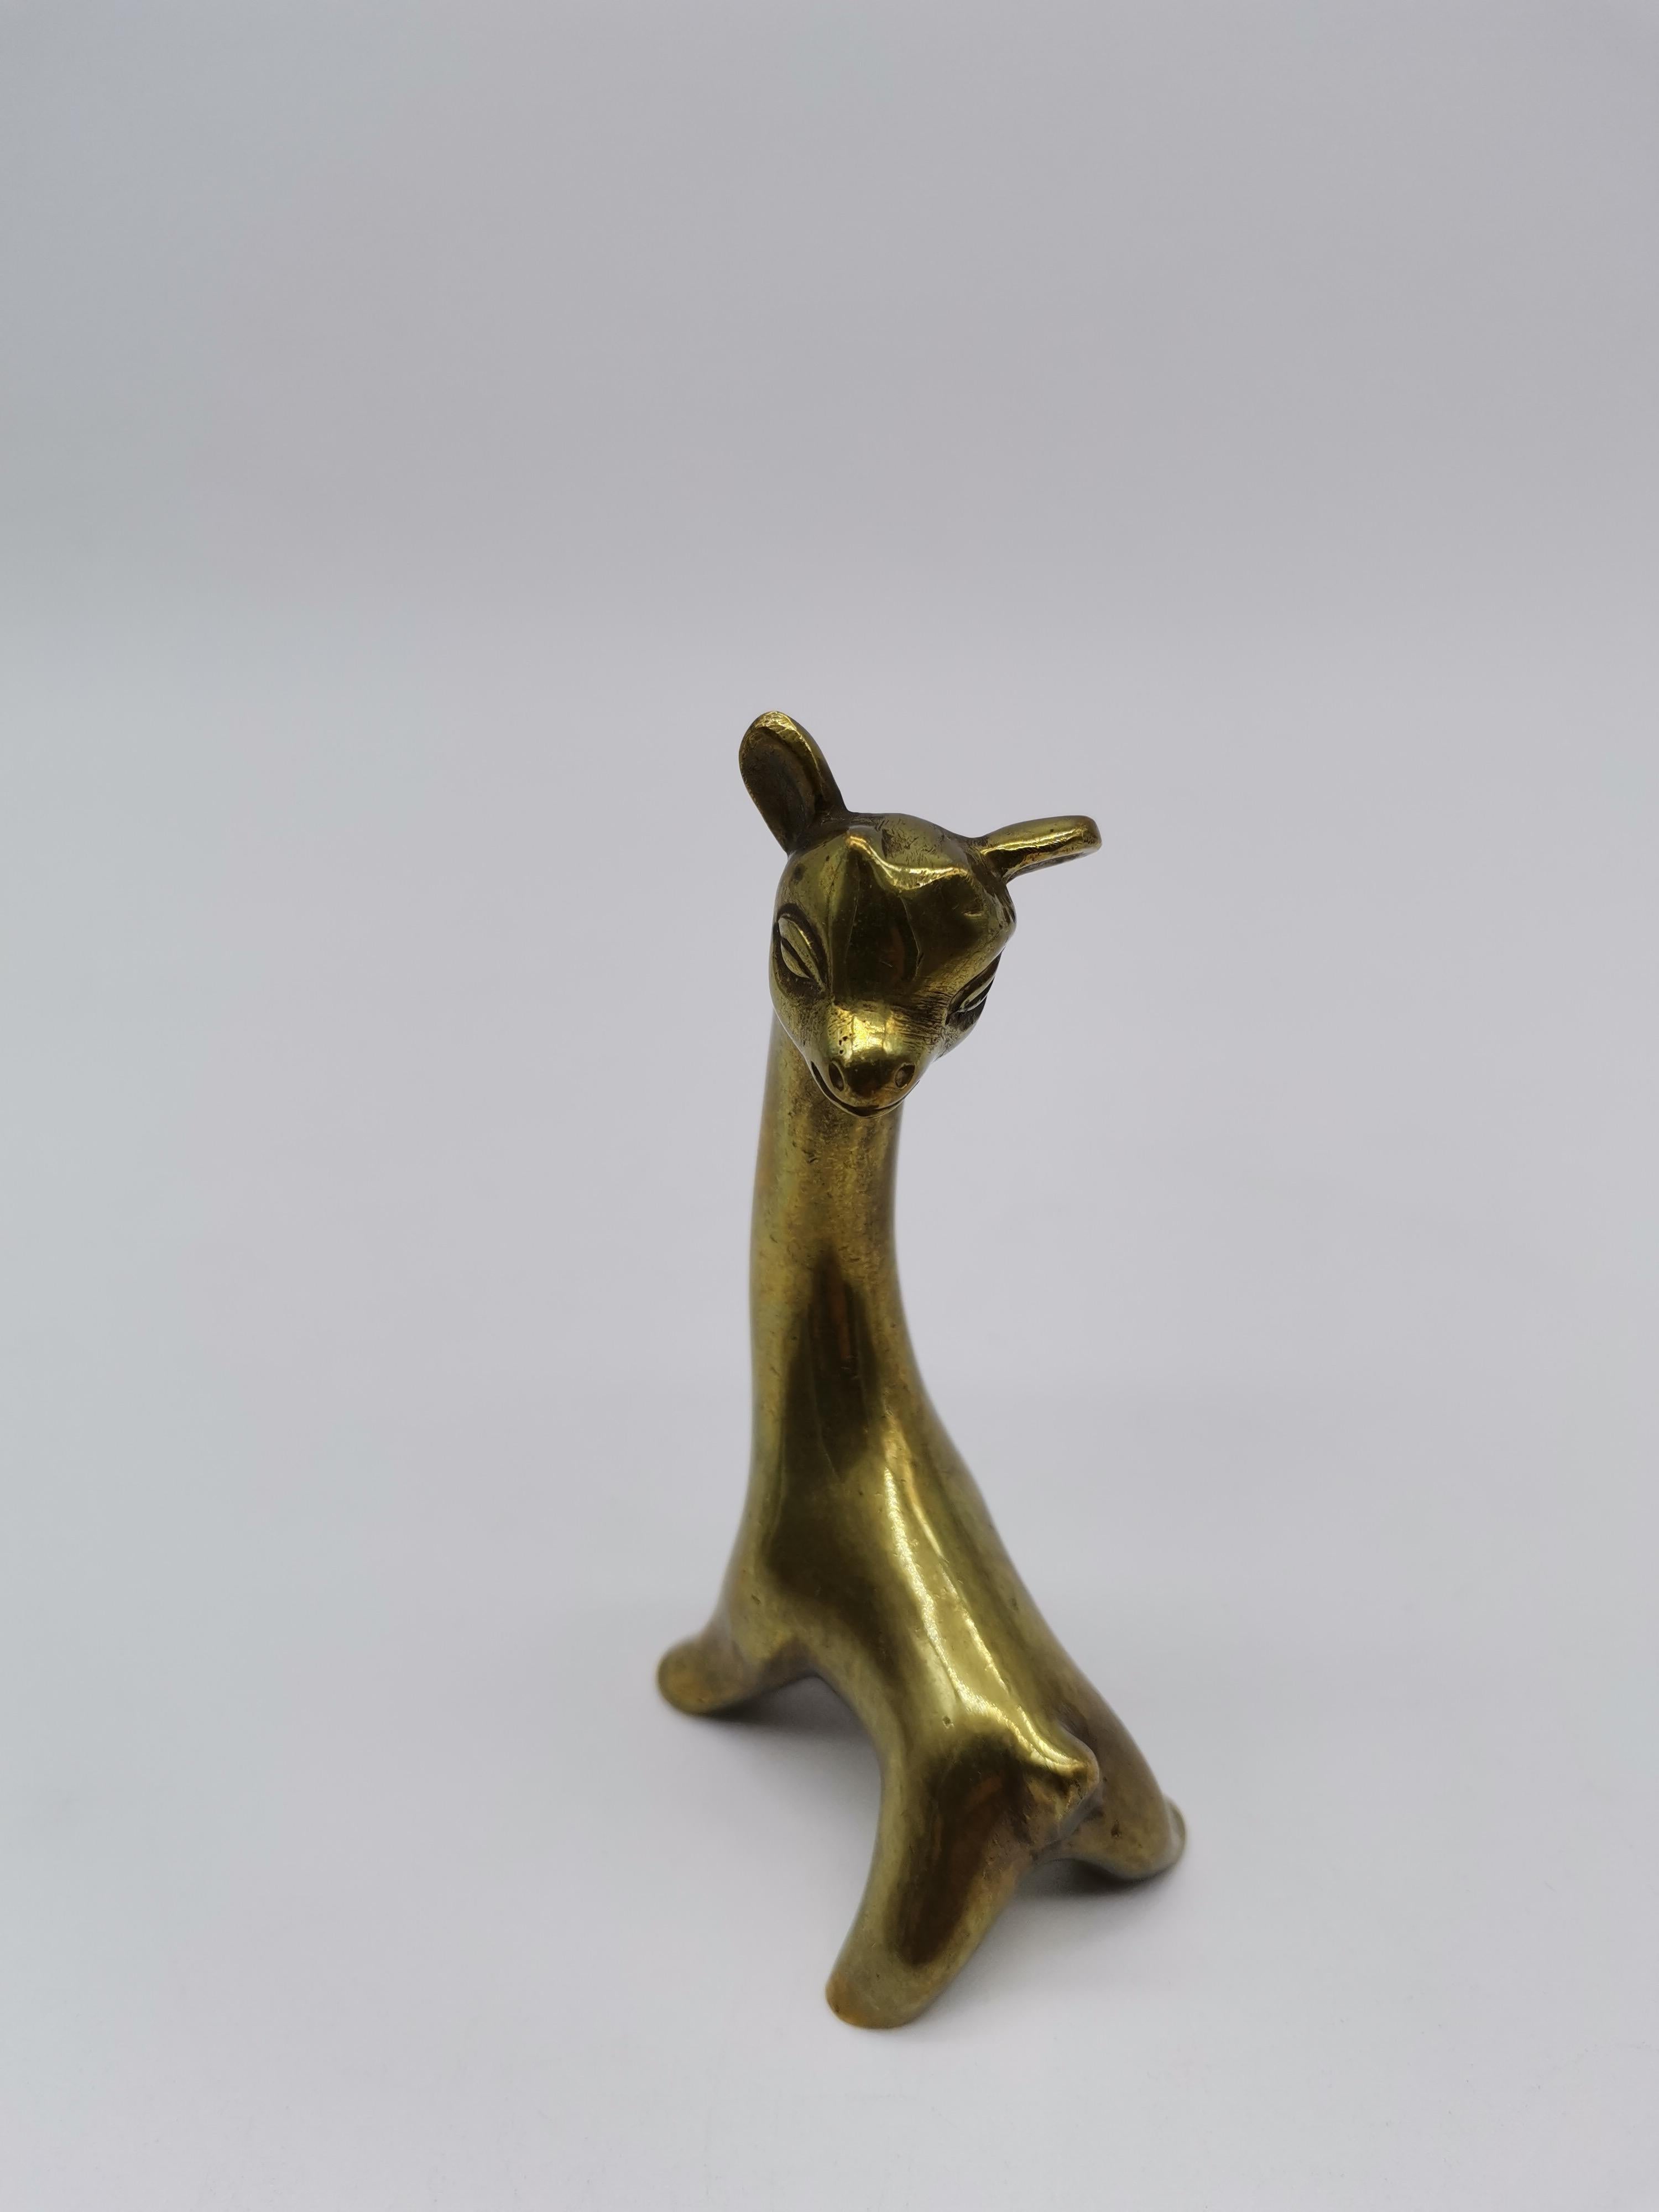 A small brass giraffe of Walter Bosse for Herta Baller Austria.